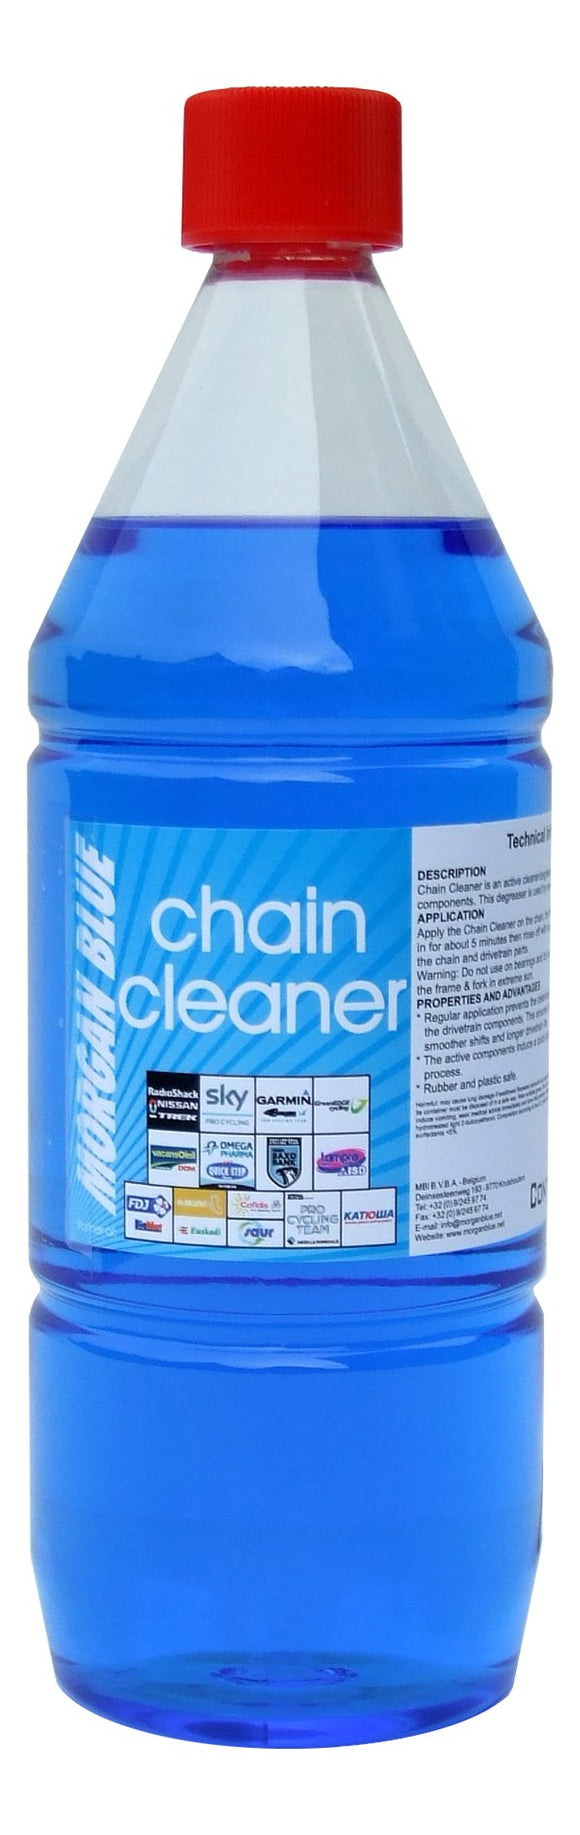 Morgan Blue Bike Chain Cleaner + Pump Applicator 1000cc